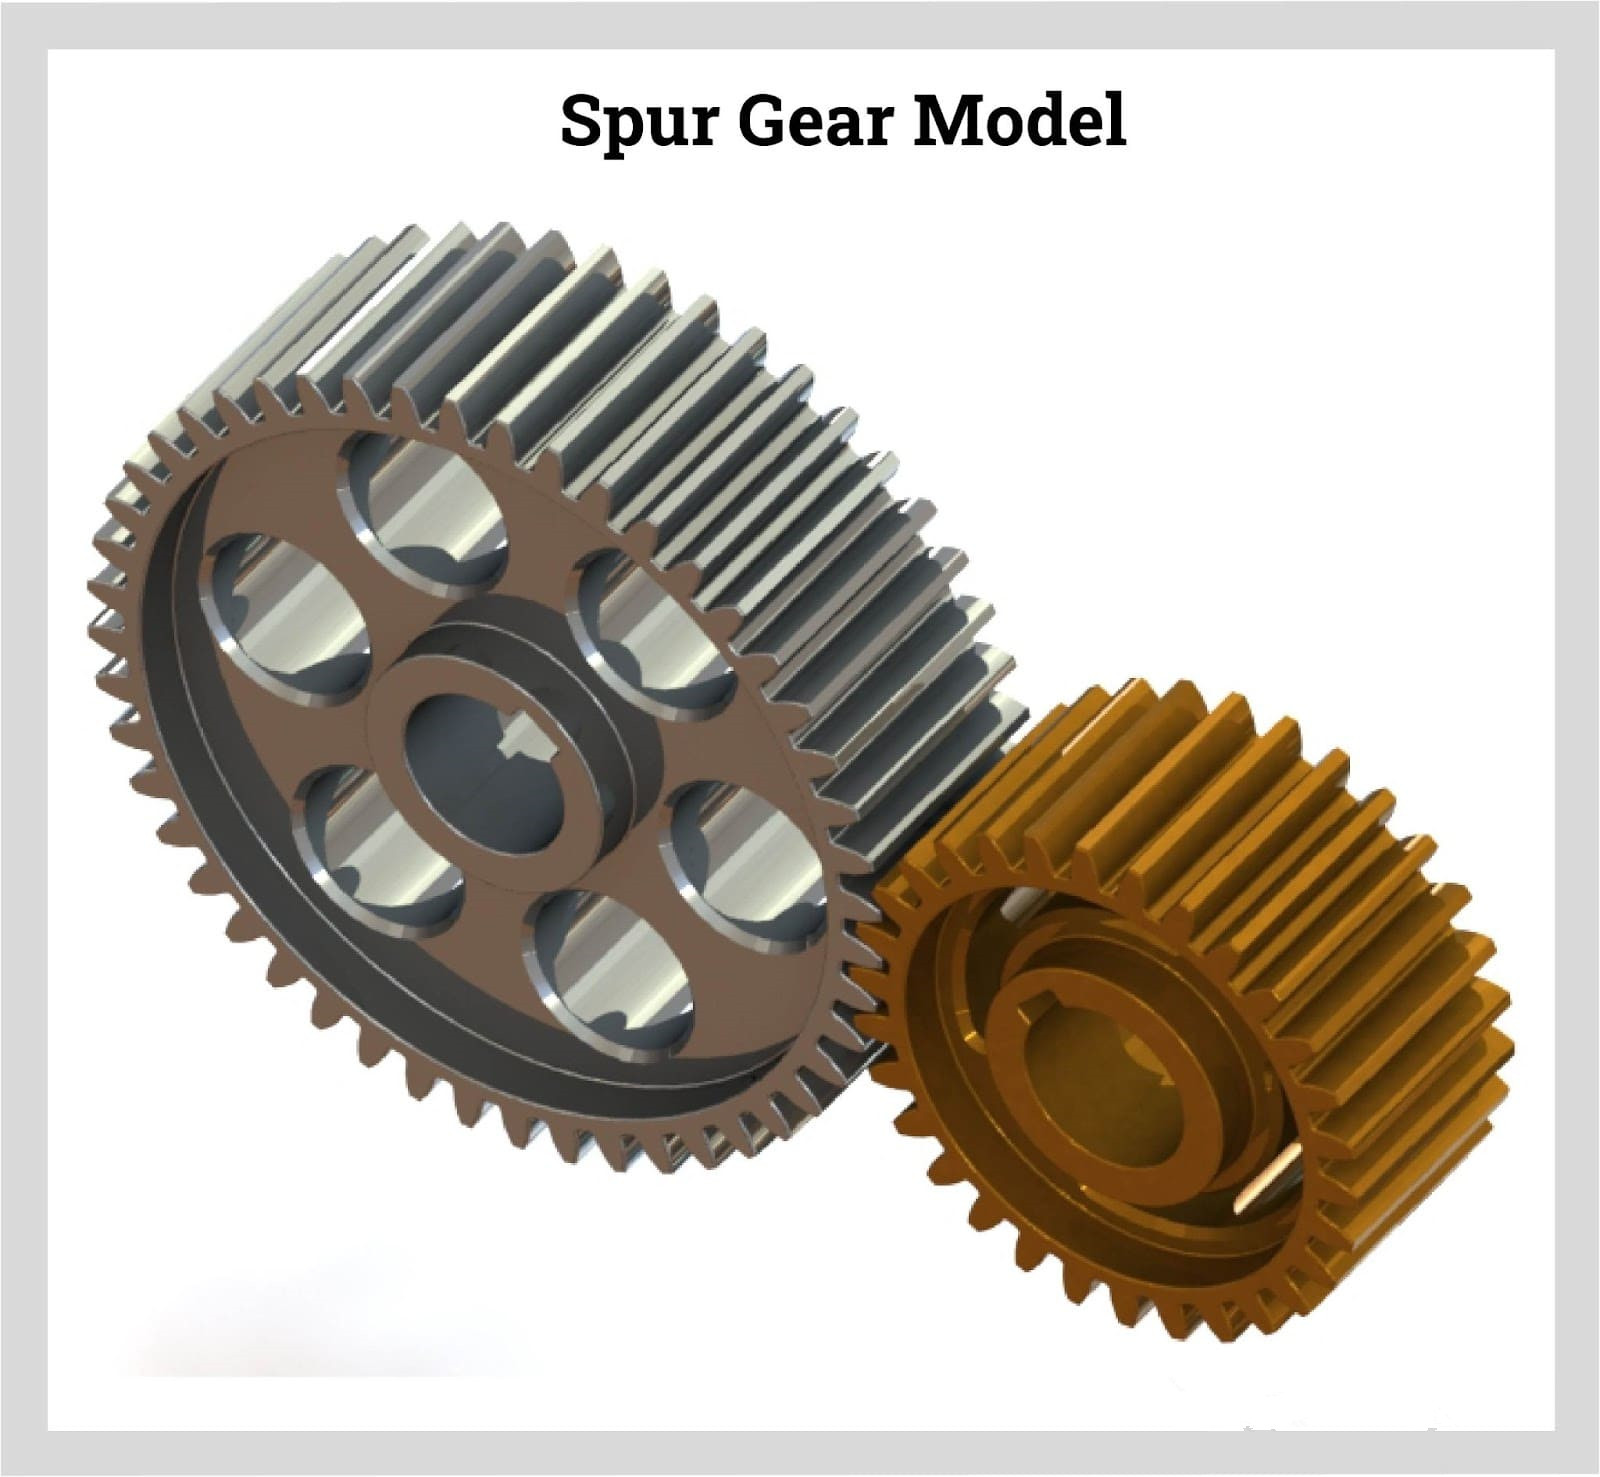 Gear wheel. Gear ring with internal tooth arrangement. spur gear